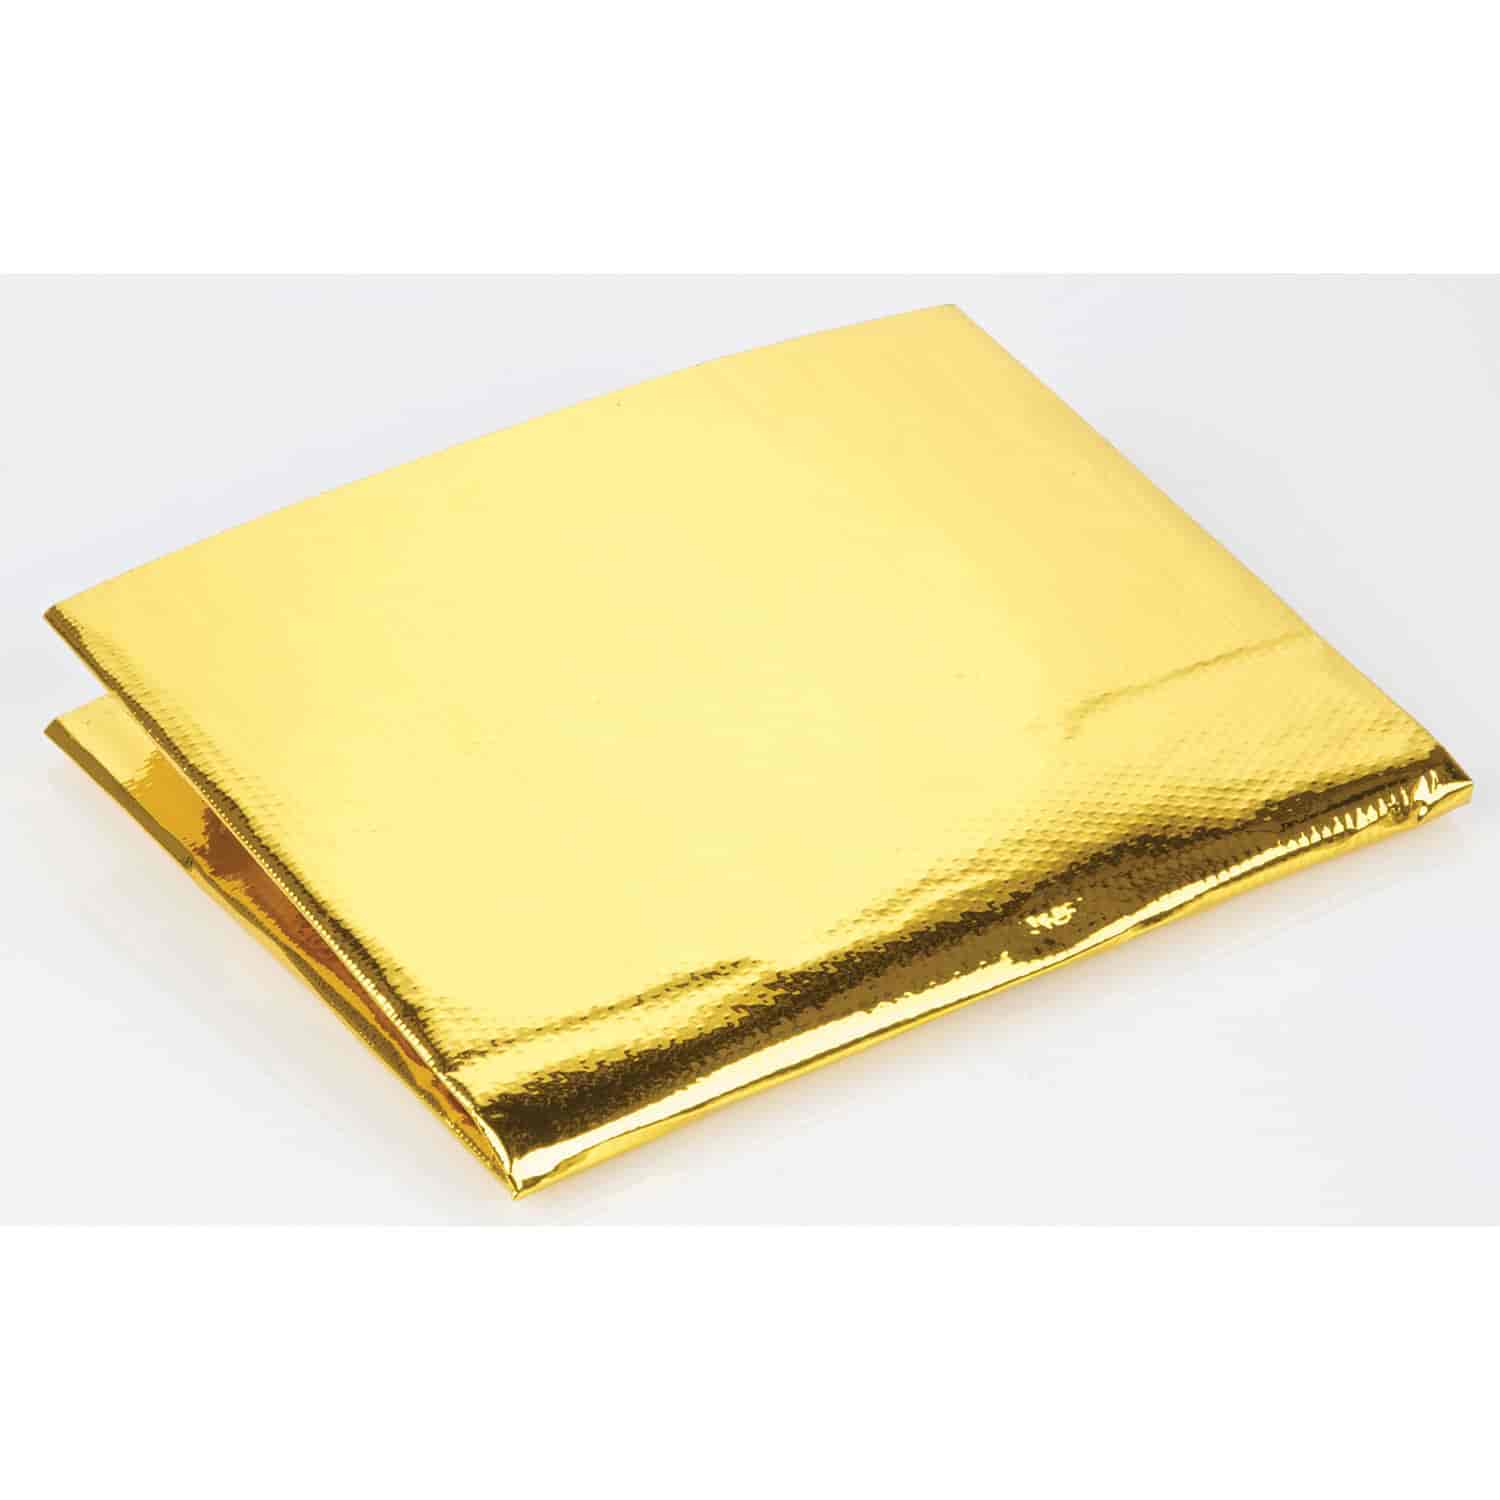 Reflective Gold Heat Shield 12